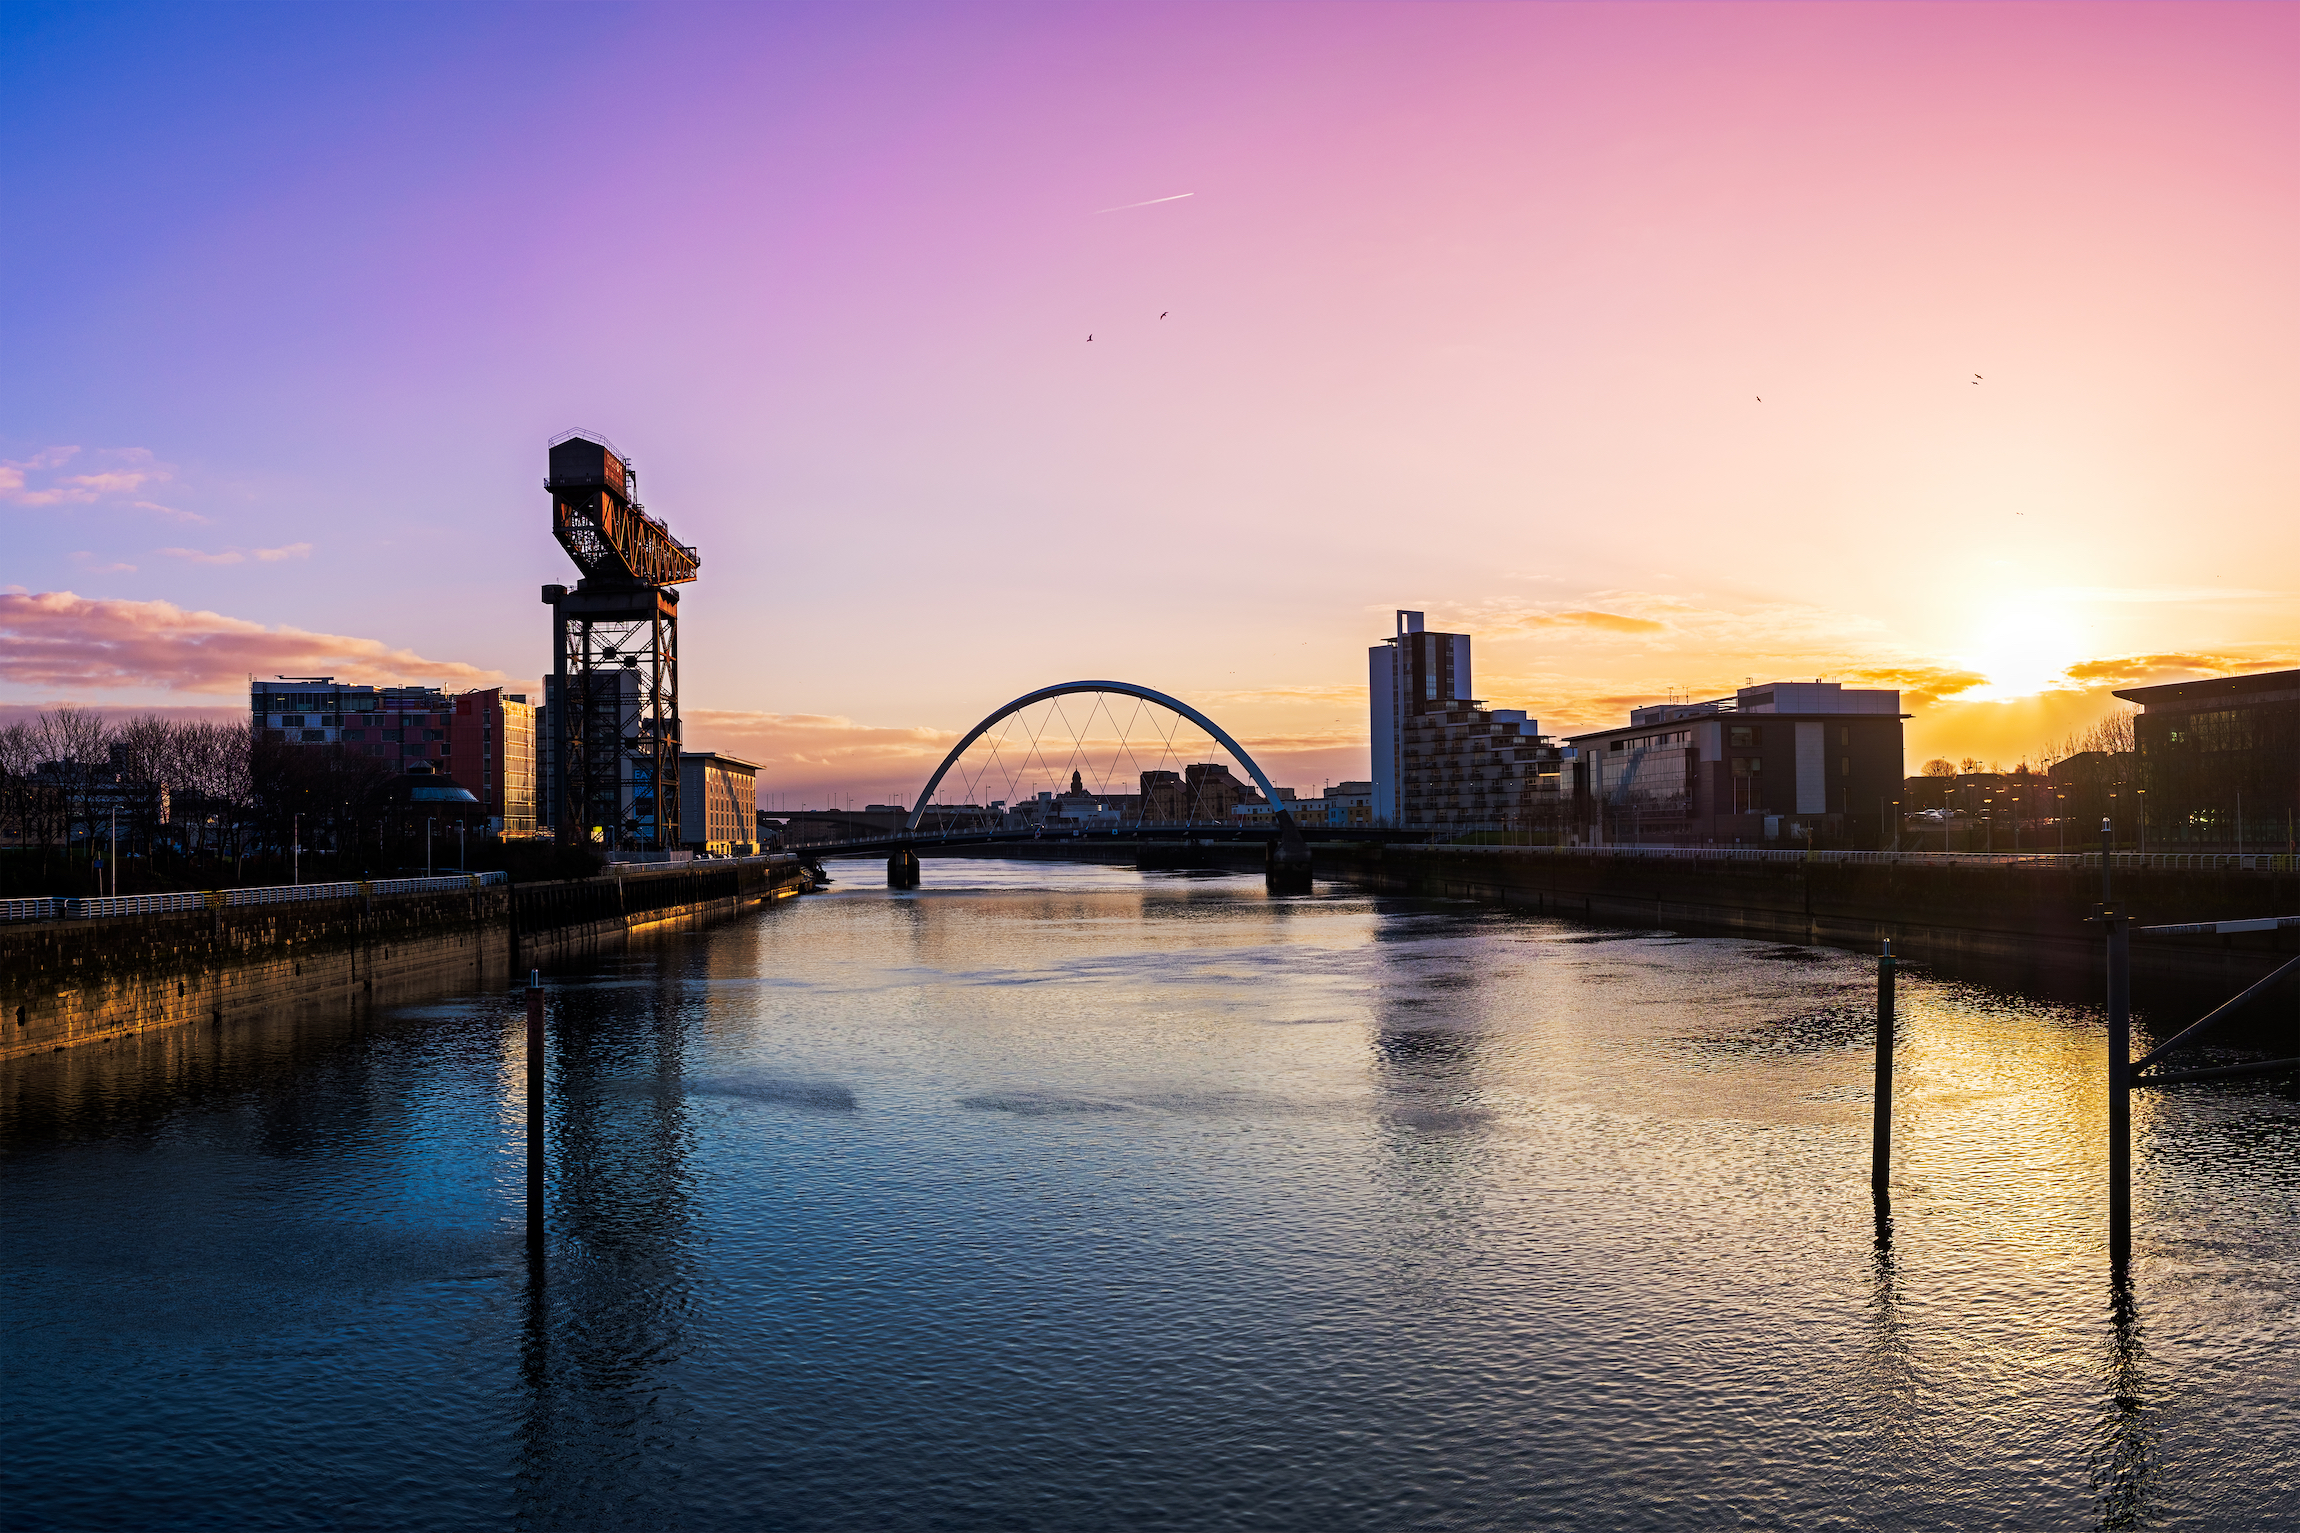 Widok na rzekę Clyde o wschodzie słońca, Glasgow, Szkocja, Wielka Brytania, Europa.